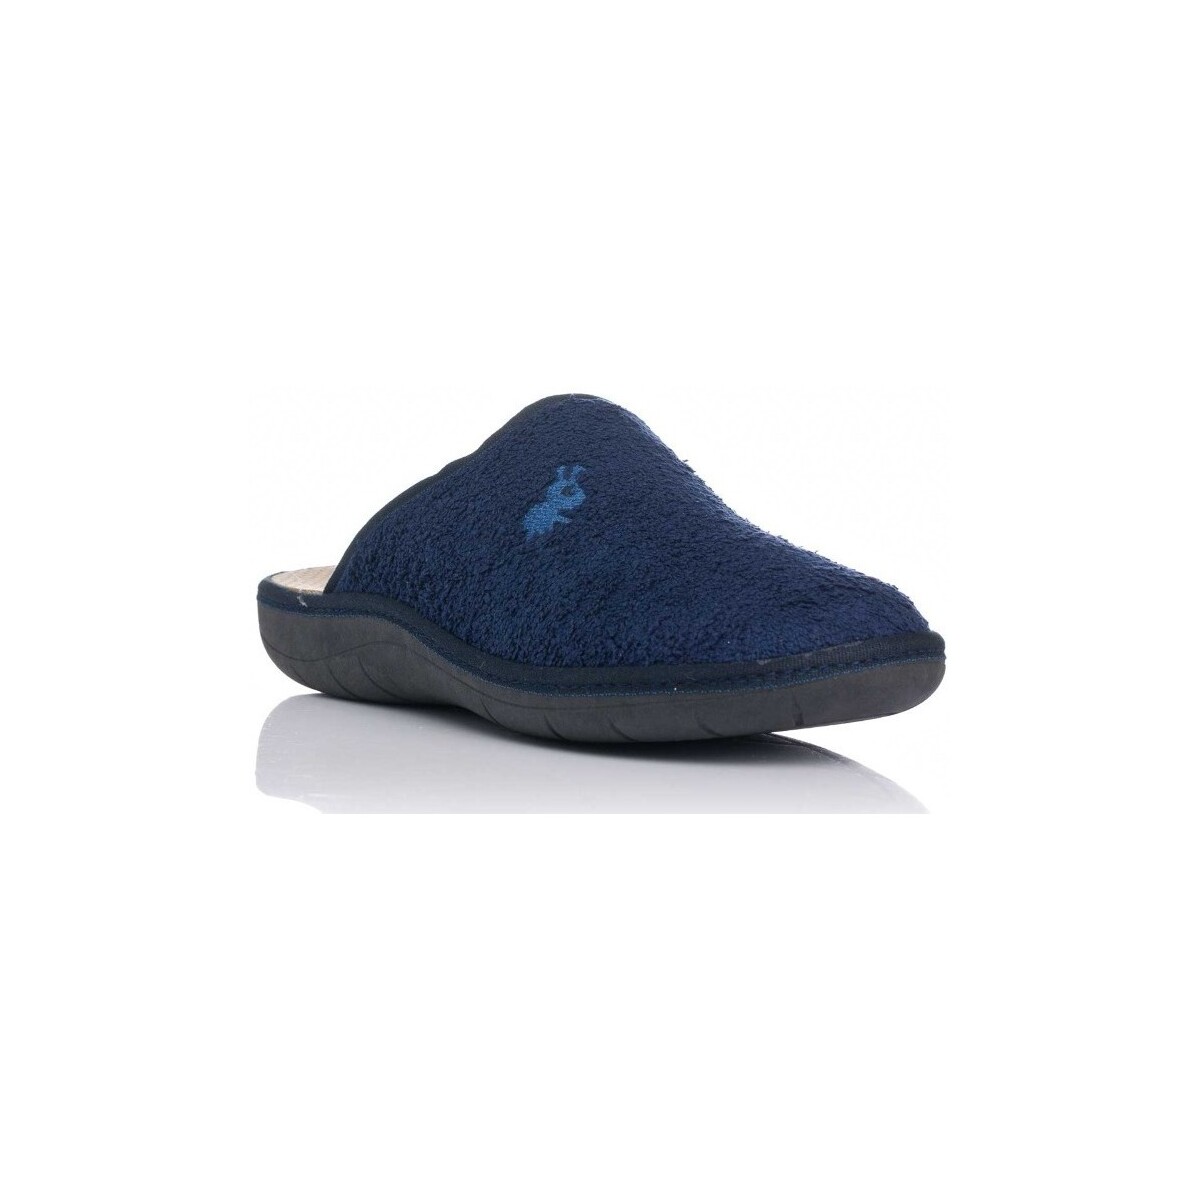 Zapatos Hombre Pantuflas Vulladi 2890-717 Azul